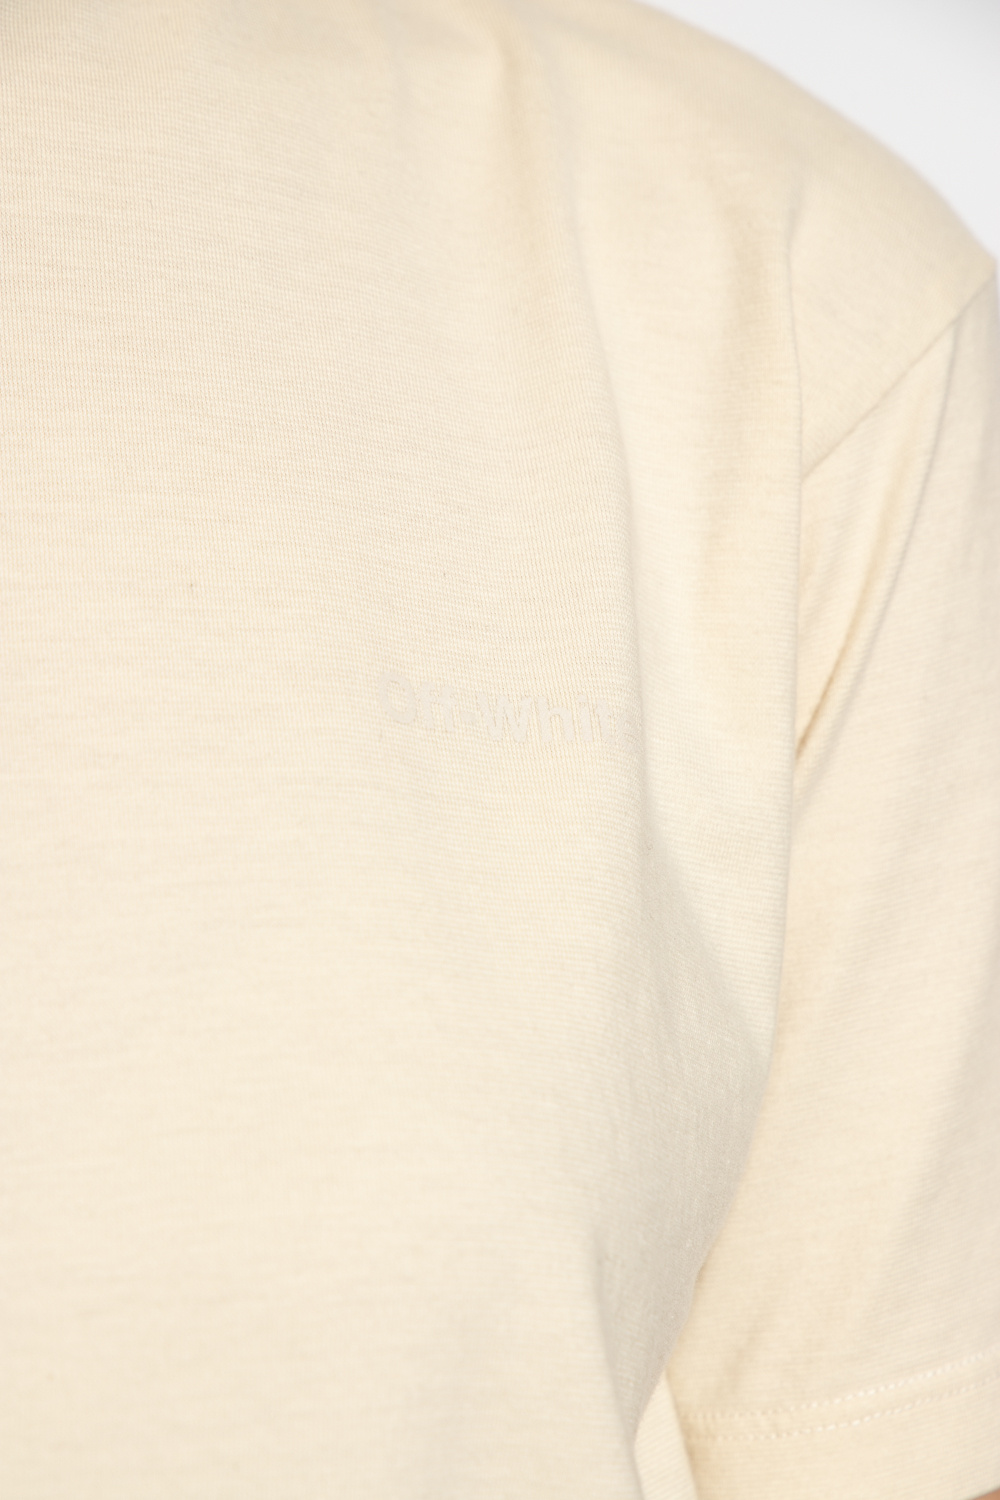 Off-White gabriela hearst clarissa cashmere sweater